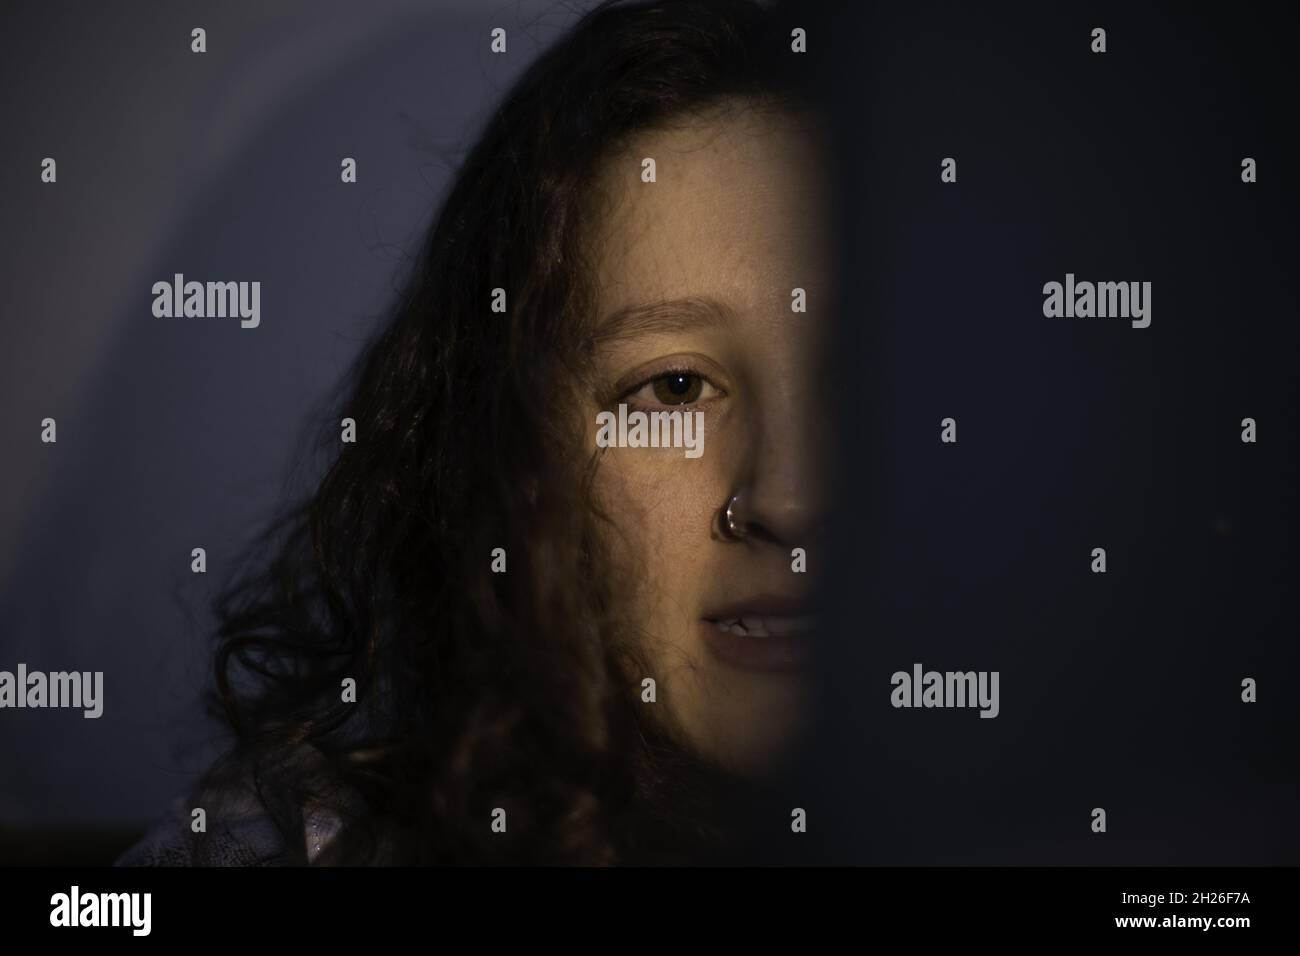 Primo piano del volto di una giovane donna nelle tenebre. Foto Stock